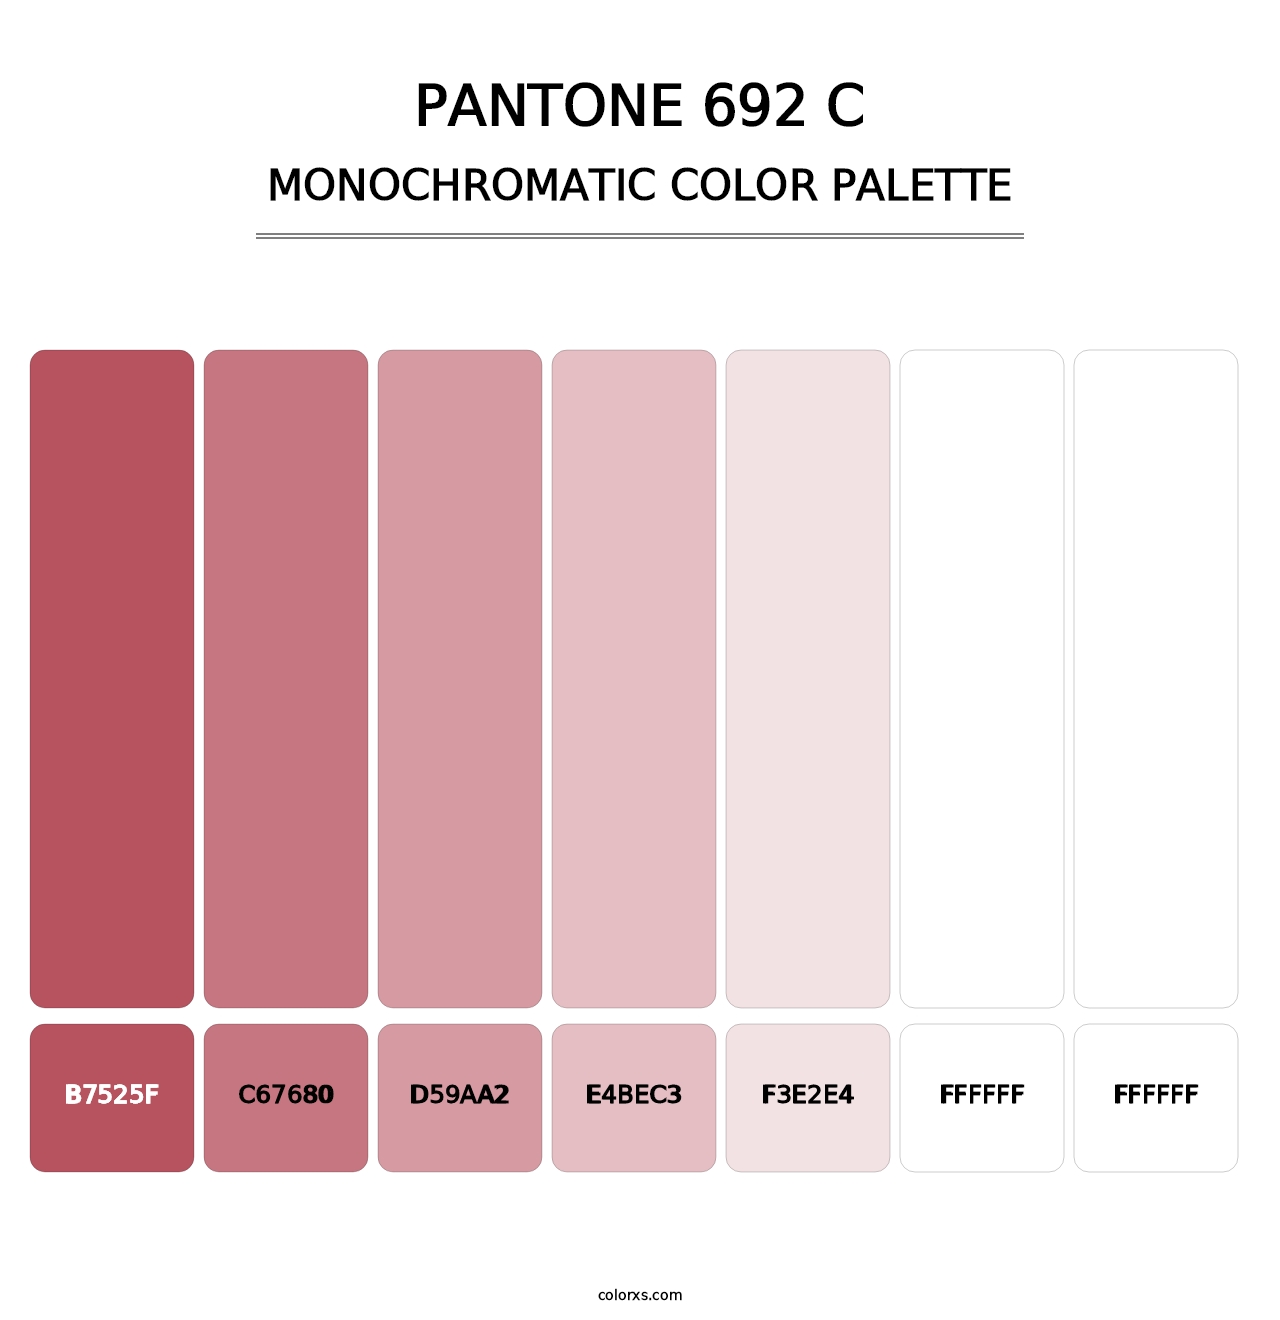 PANTONE 692 C - Monochromatic Color Palette